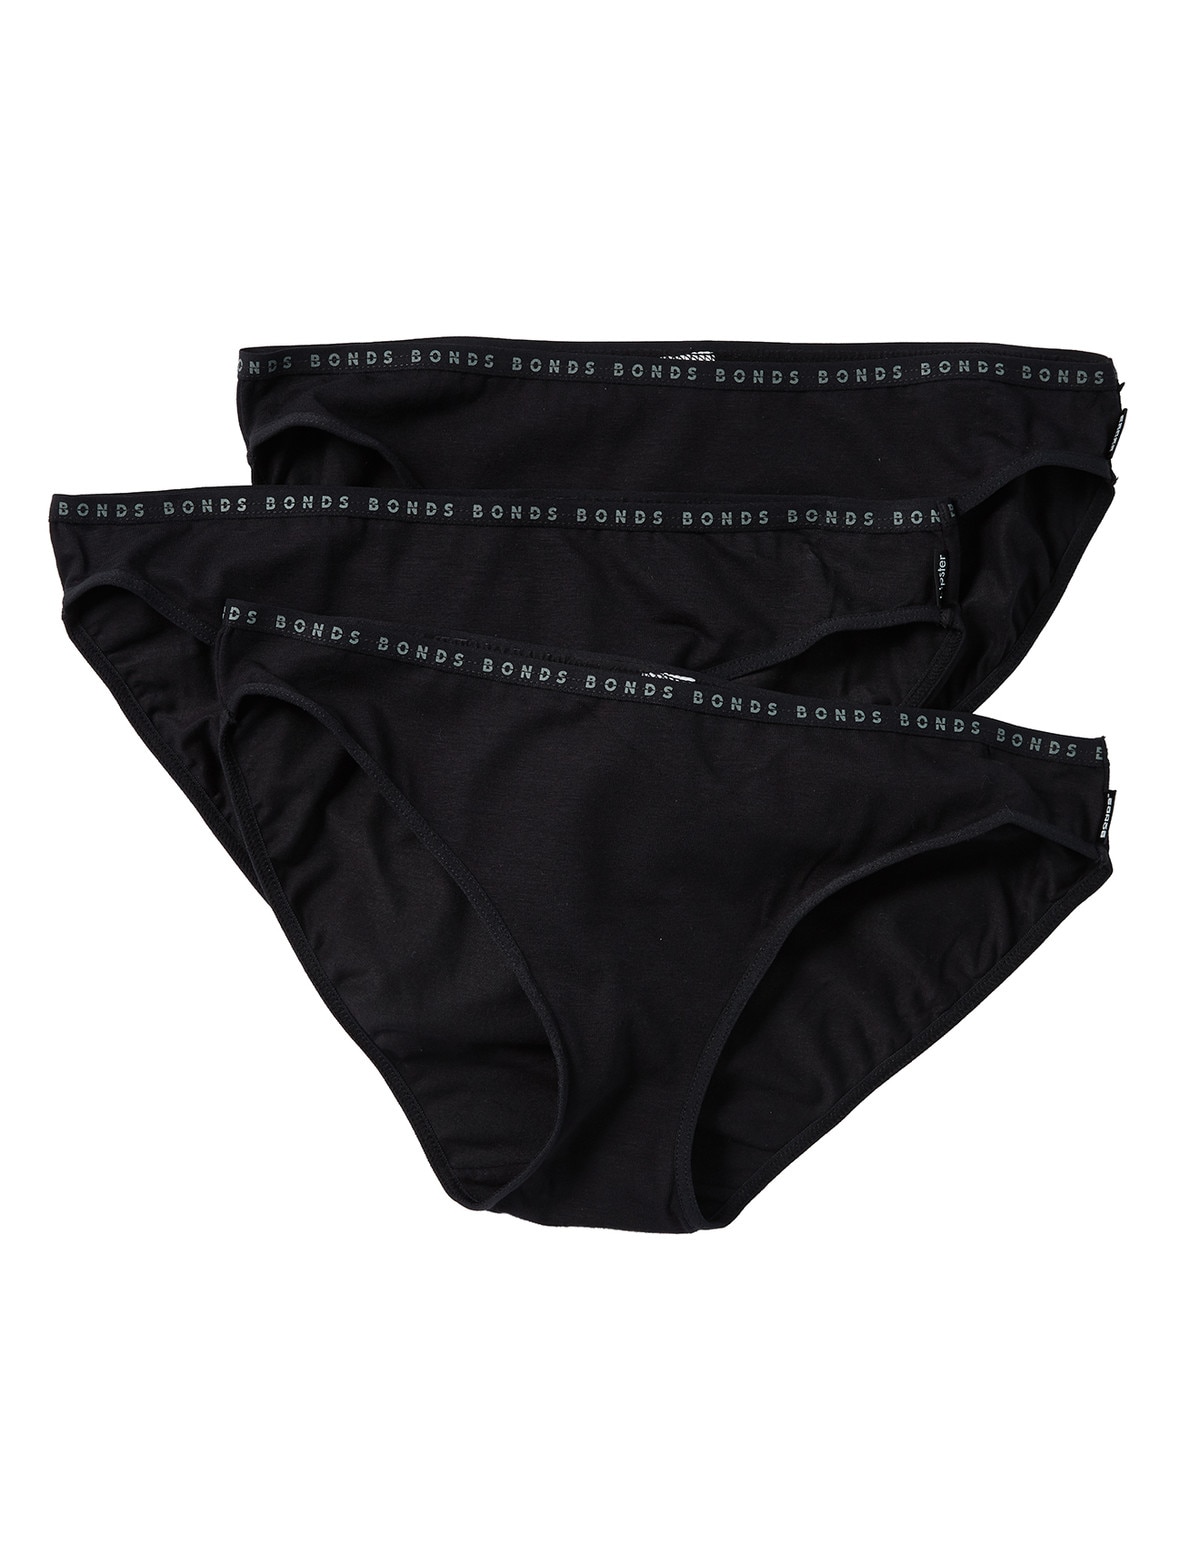 OZSALE  Bonds 5 X Bonds Ladies Womens Hipster Bikini Underwear Briefs  Assorted Pack